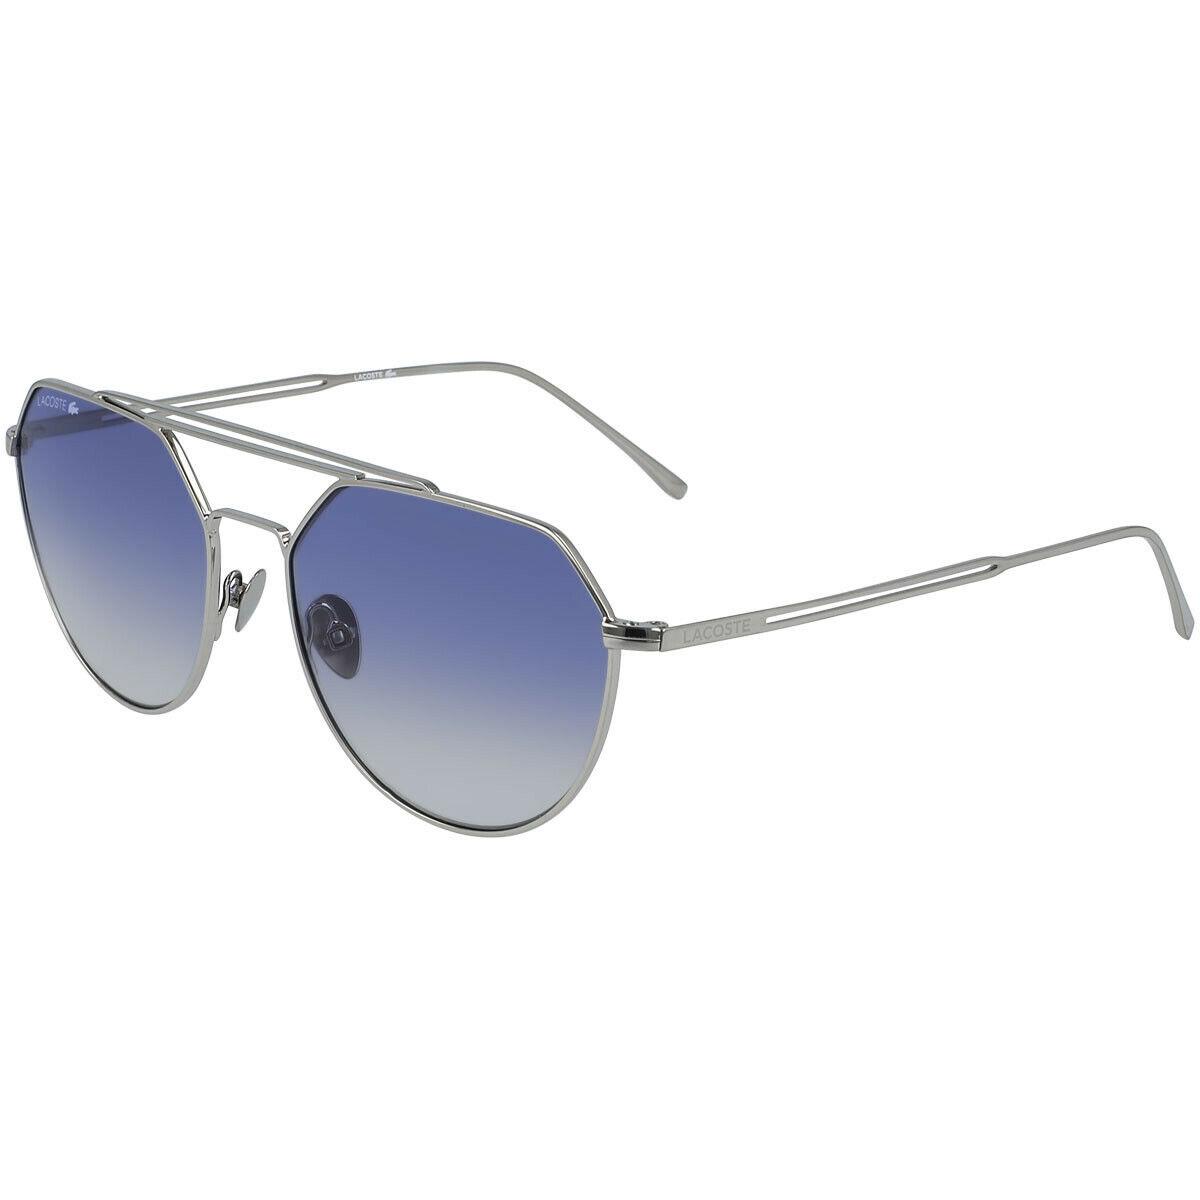 Lacoste L220SPC 045 54mm Shiny Silver Blue Lens Unisex Metal Pilot Sunglasses - Silver Frame, Blue Lens